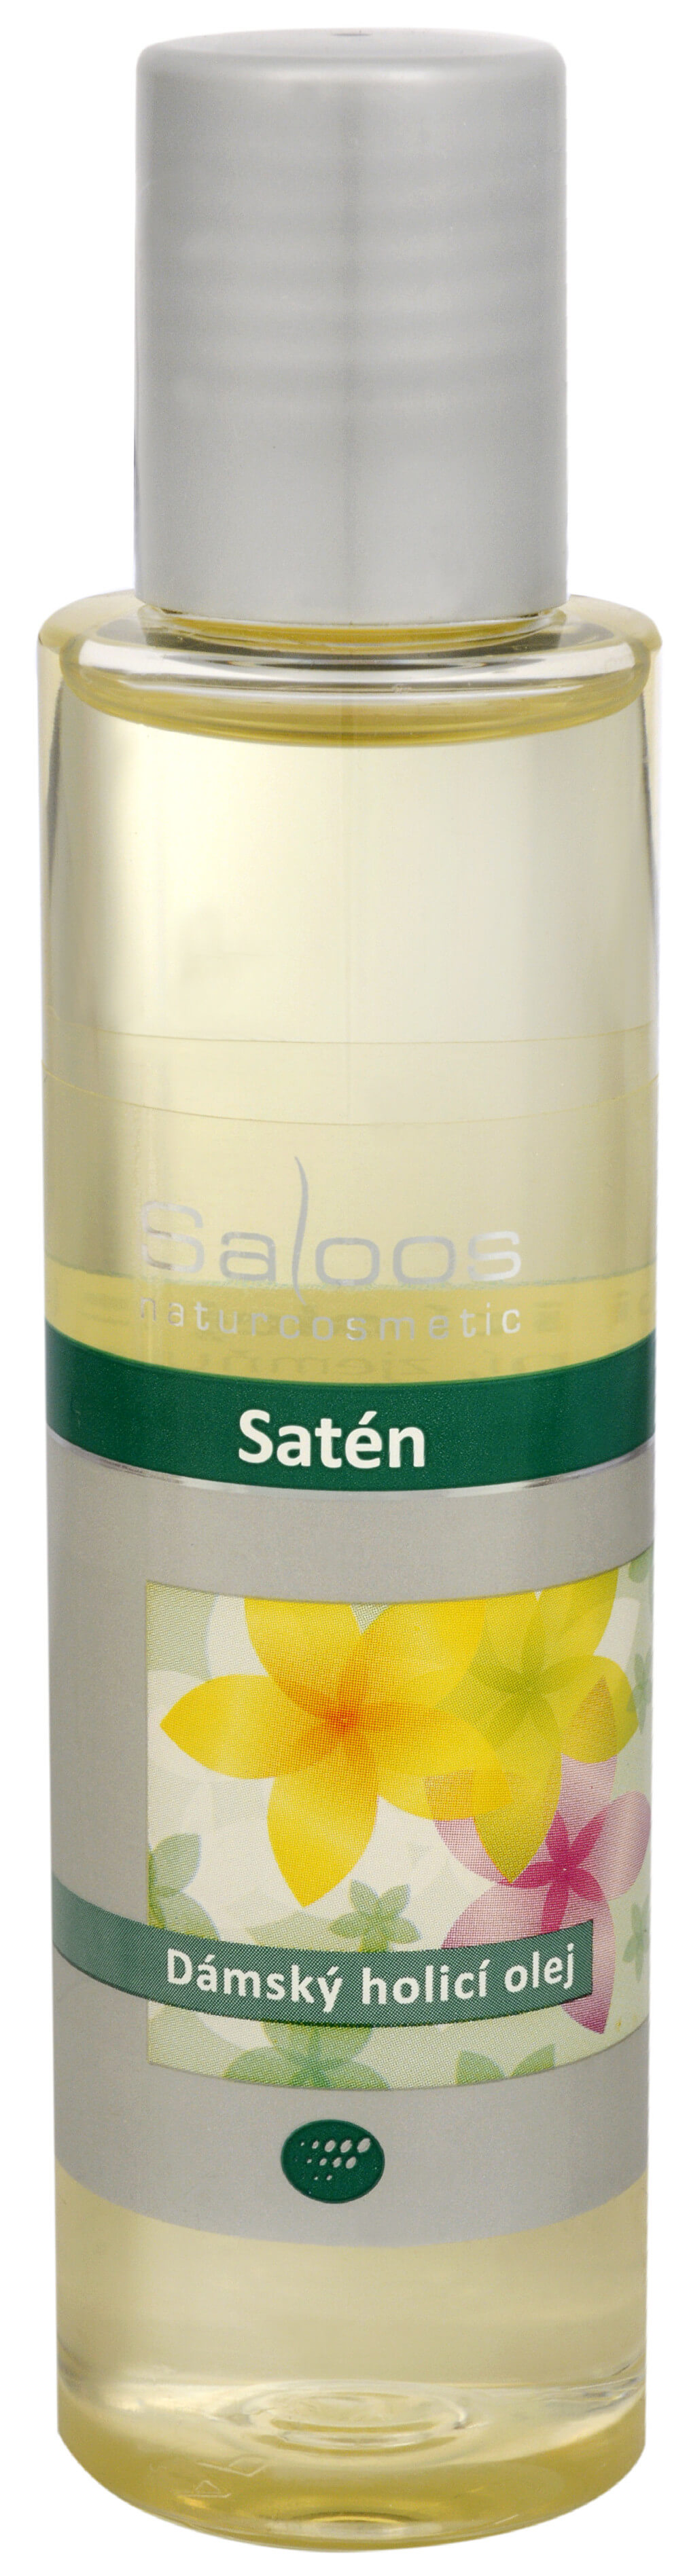 Zobrazit detail výrobku Saloos Satén - dámský holicí olej 125 ml